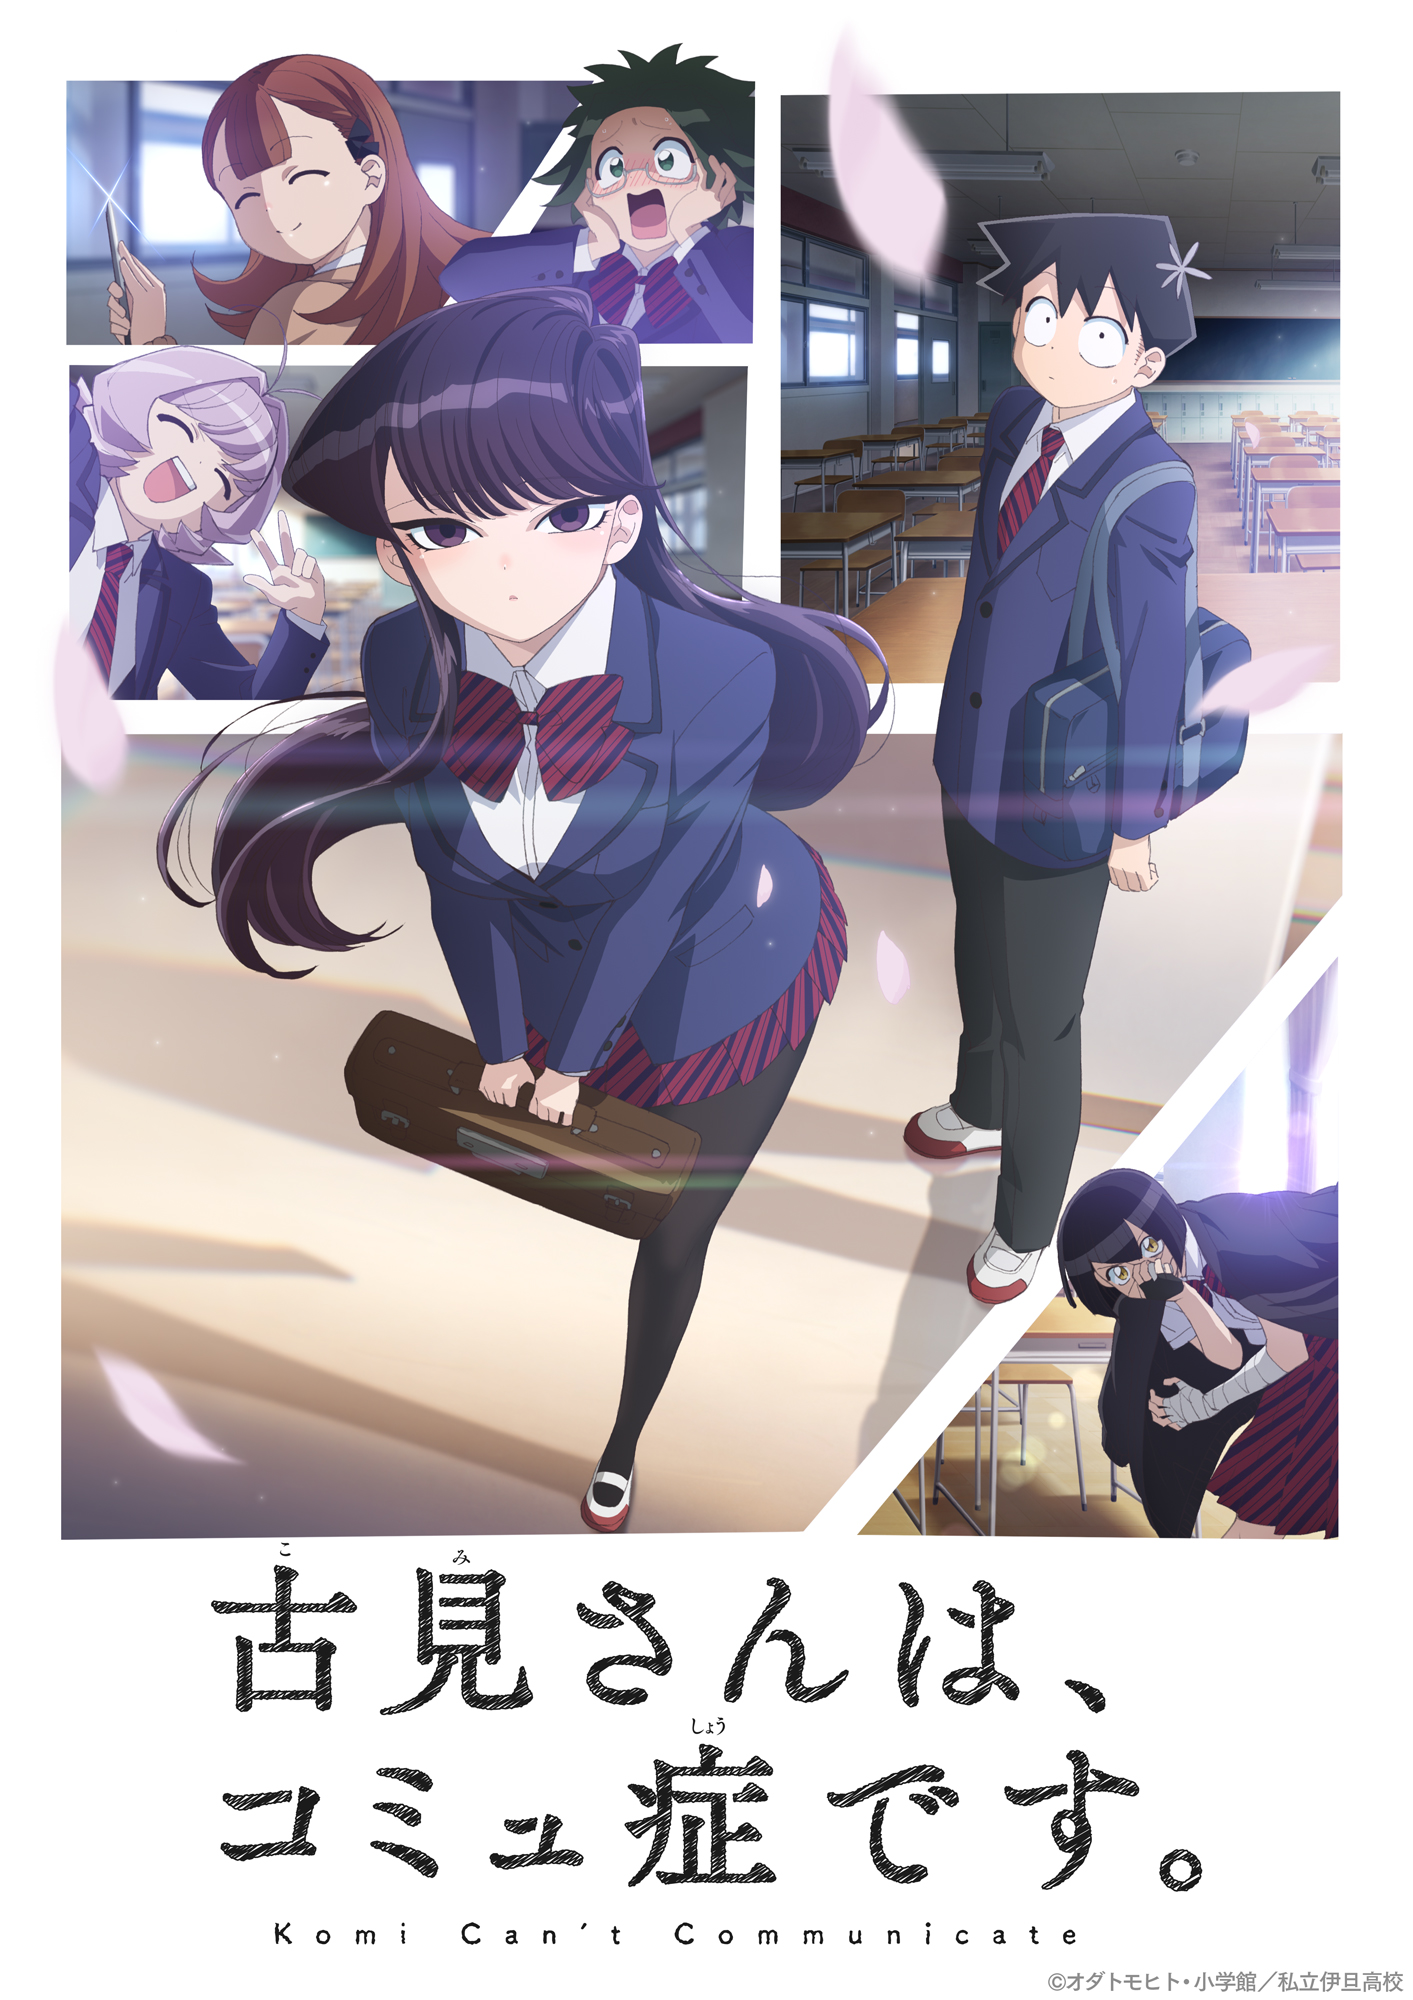 Komi-san wa Komyushou Desu (Anime) Season 1, Komi-san wa Komyushou Desu  Wiki